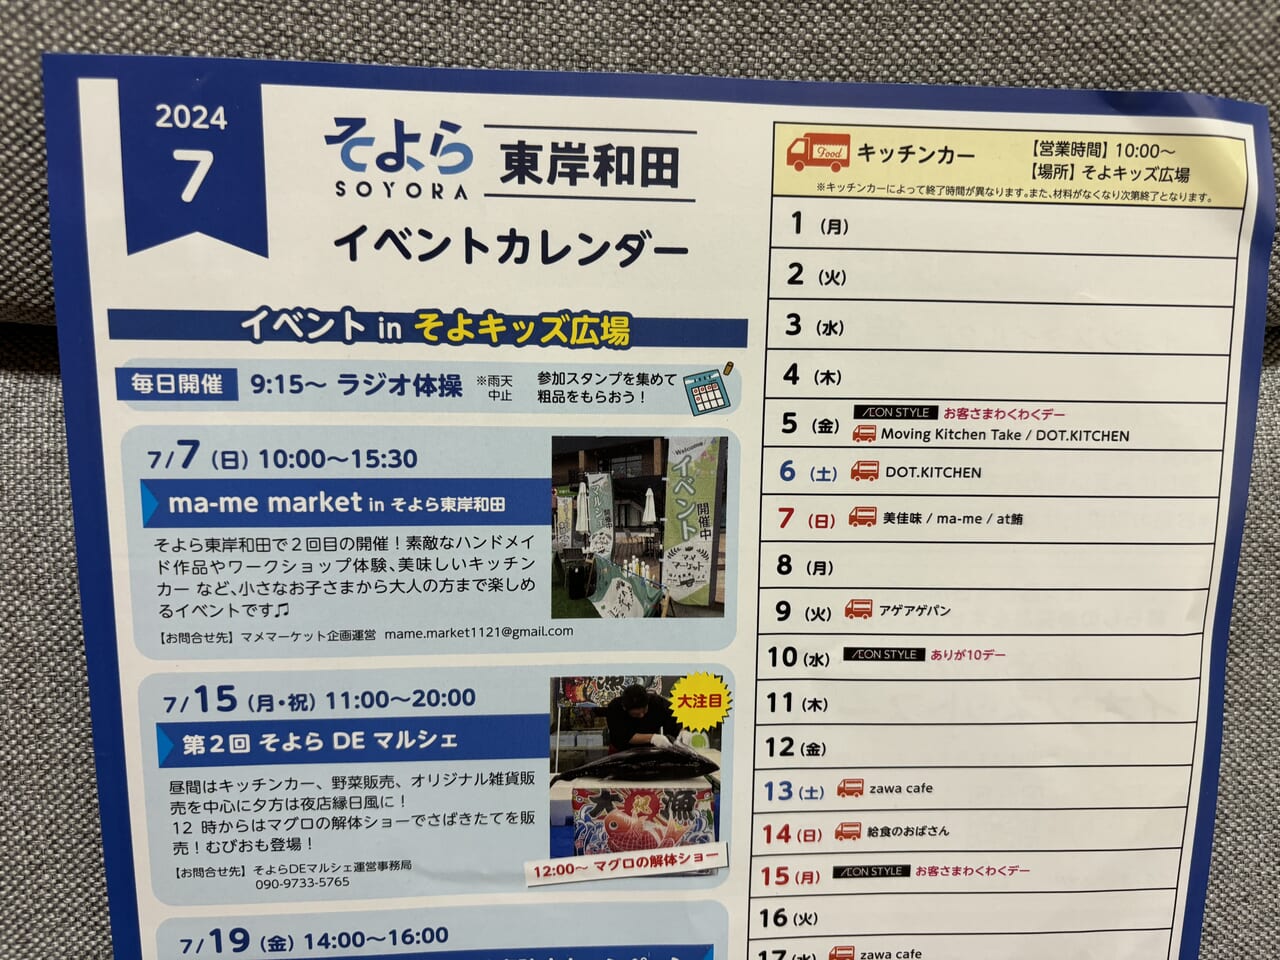 そよら東岸和田イベントカレンダー202407前半